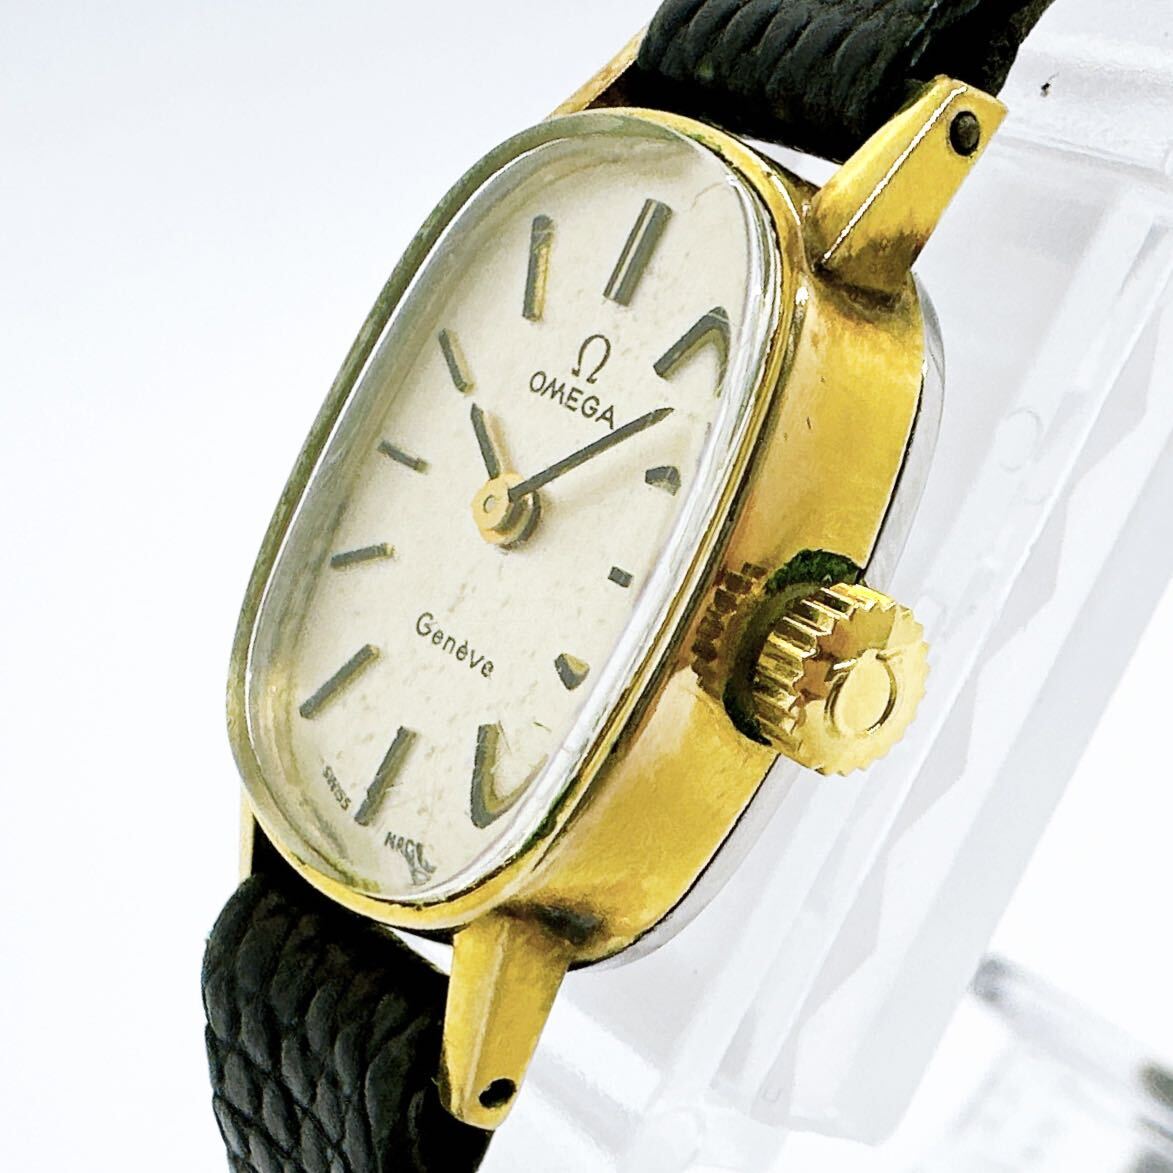 03157 オメガ OMEGA ジュネーブ Geneve レディース 腕時計 手巻き ゴールドカラー アンティーク ヴィンテージ_画像2